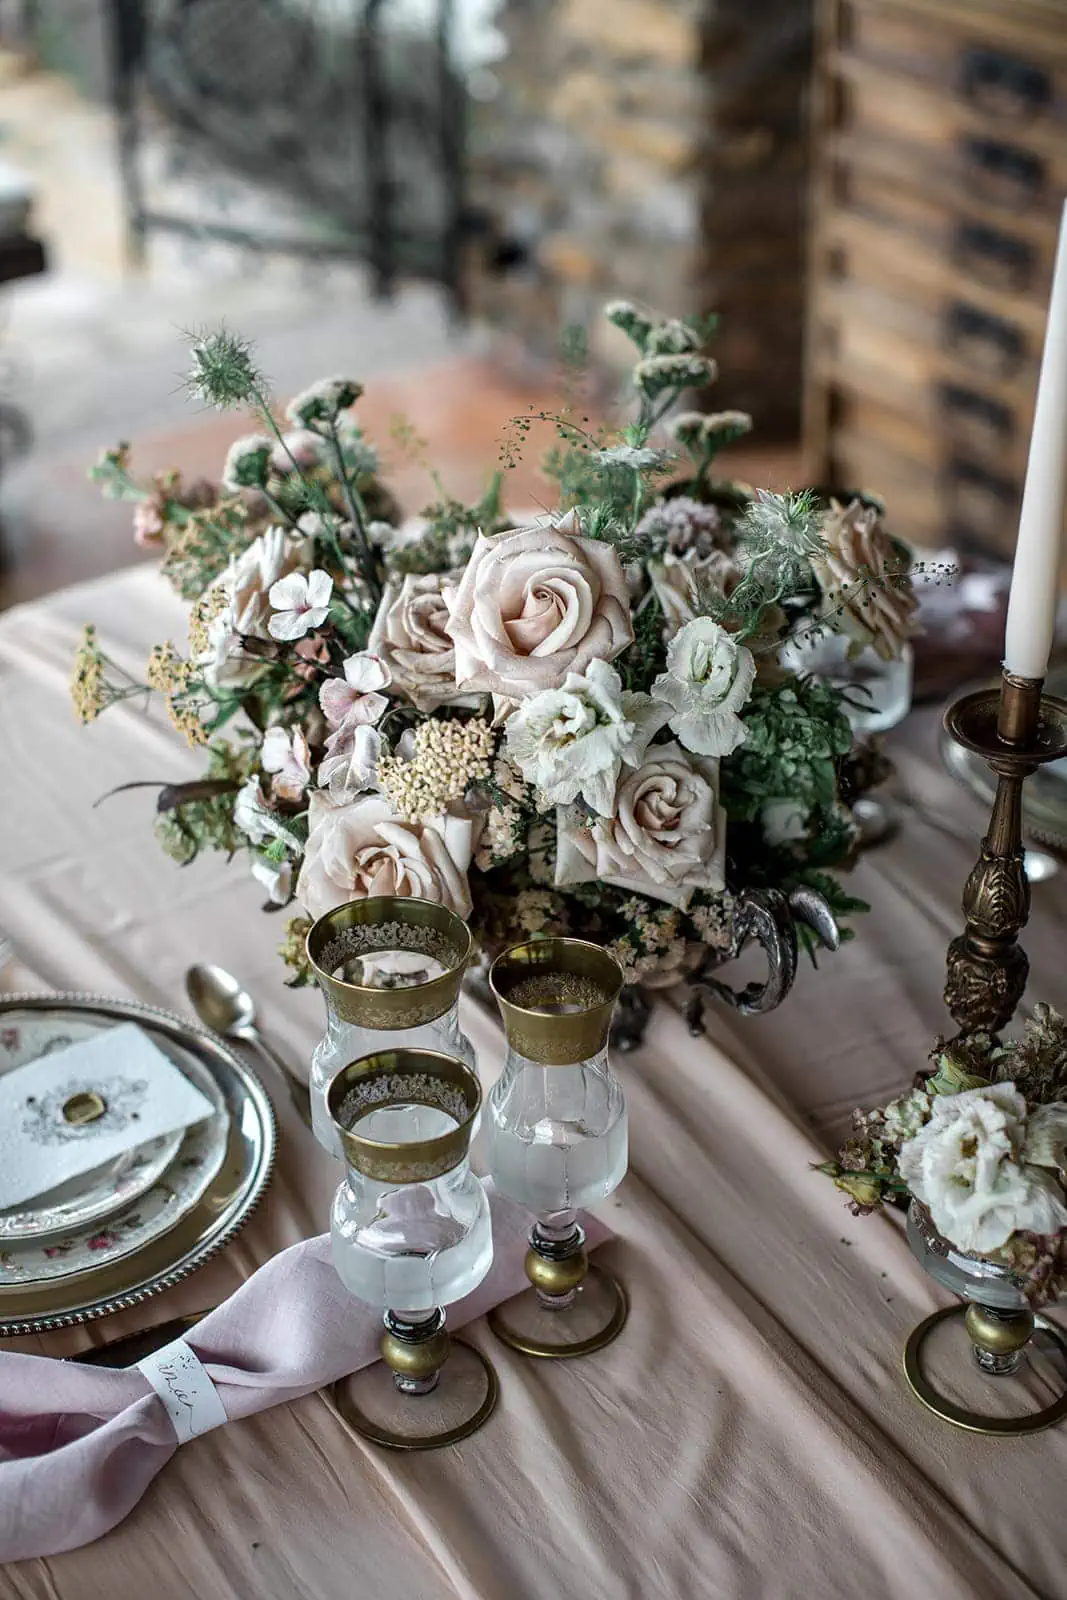 Vow renewal reception floral arrangement